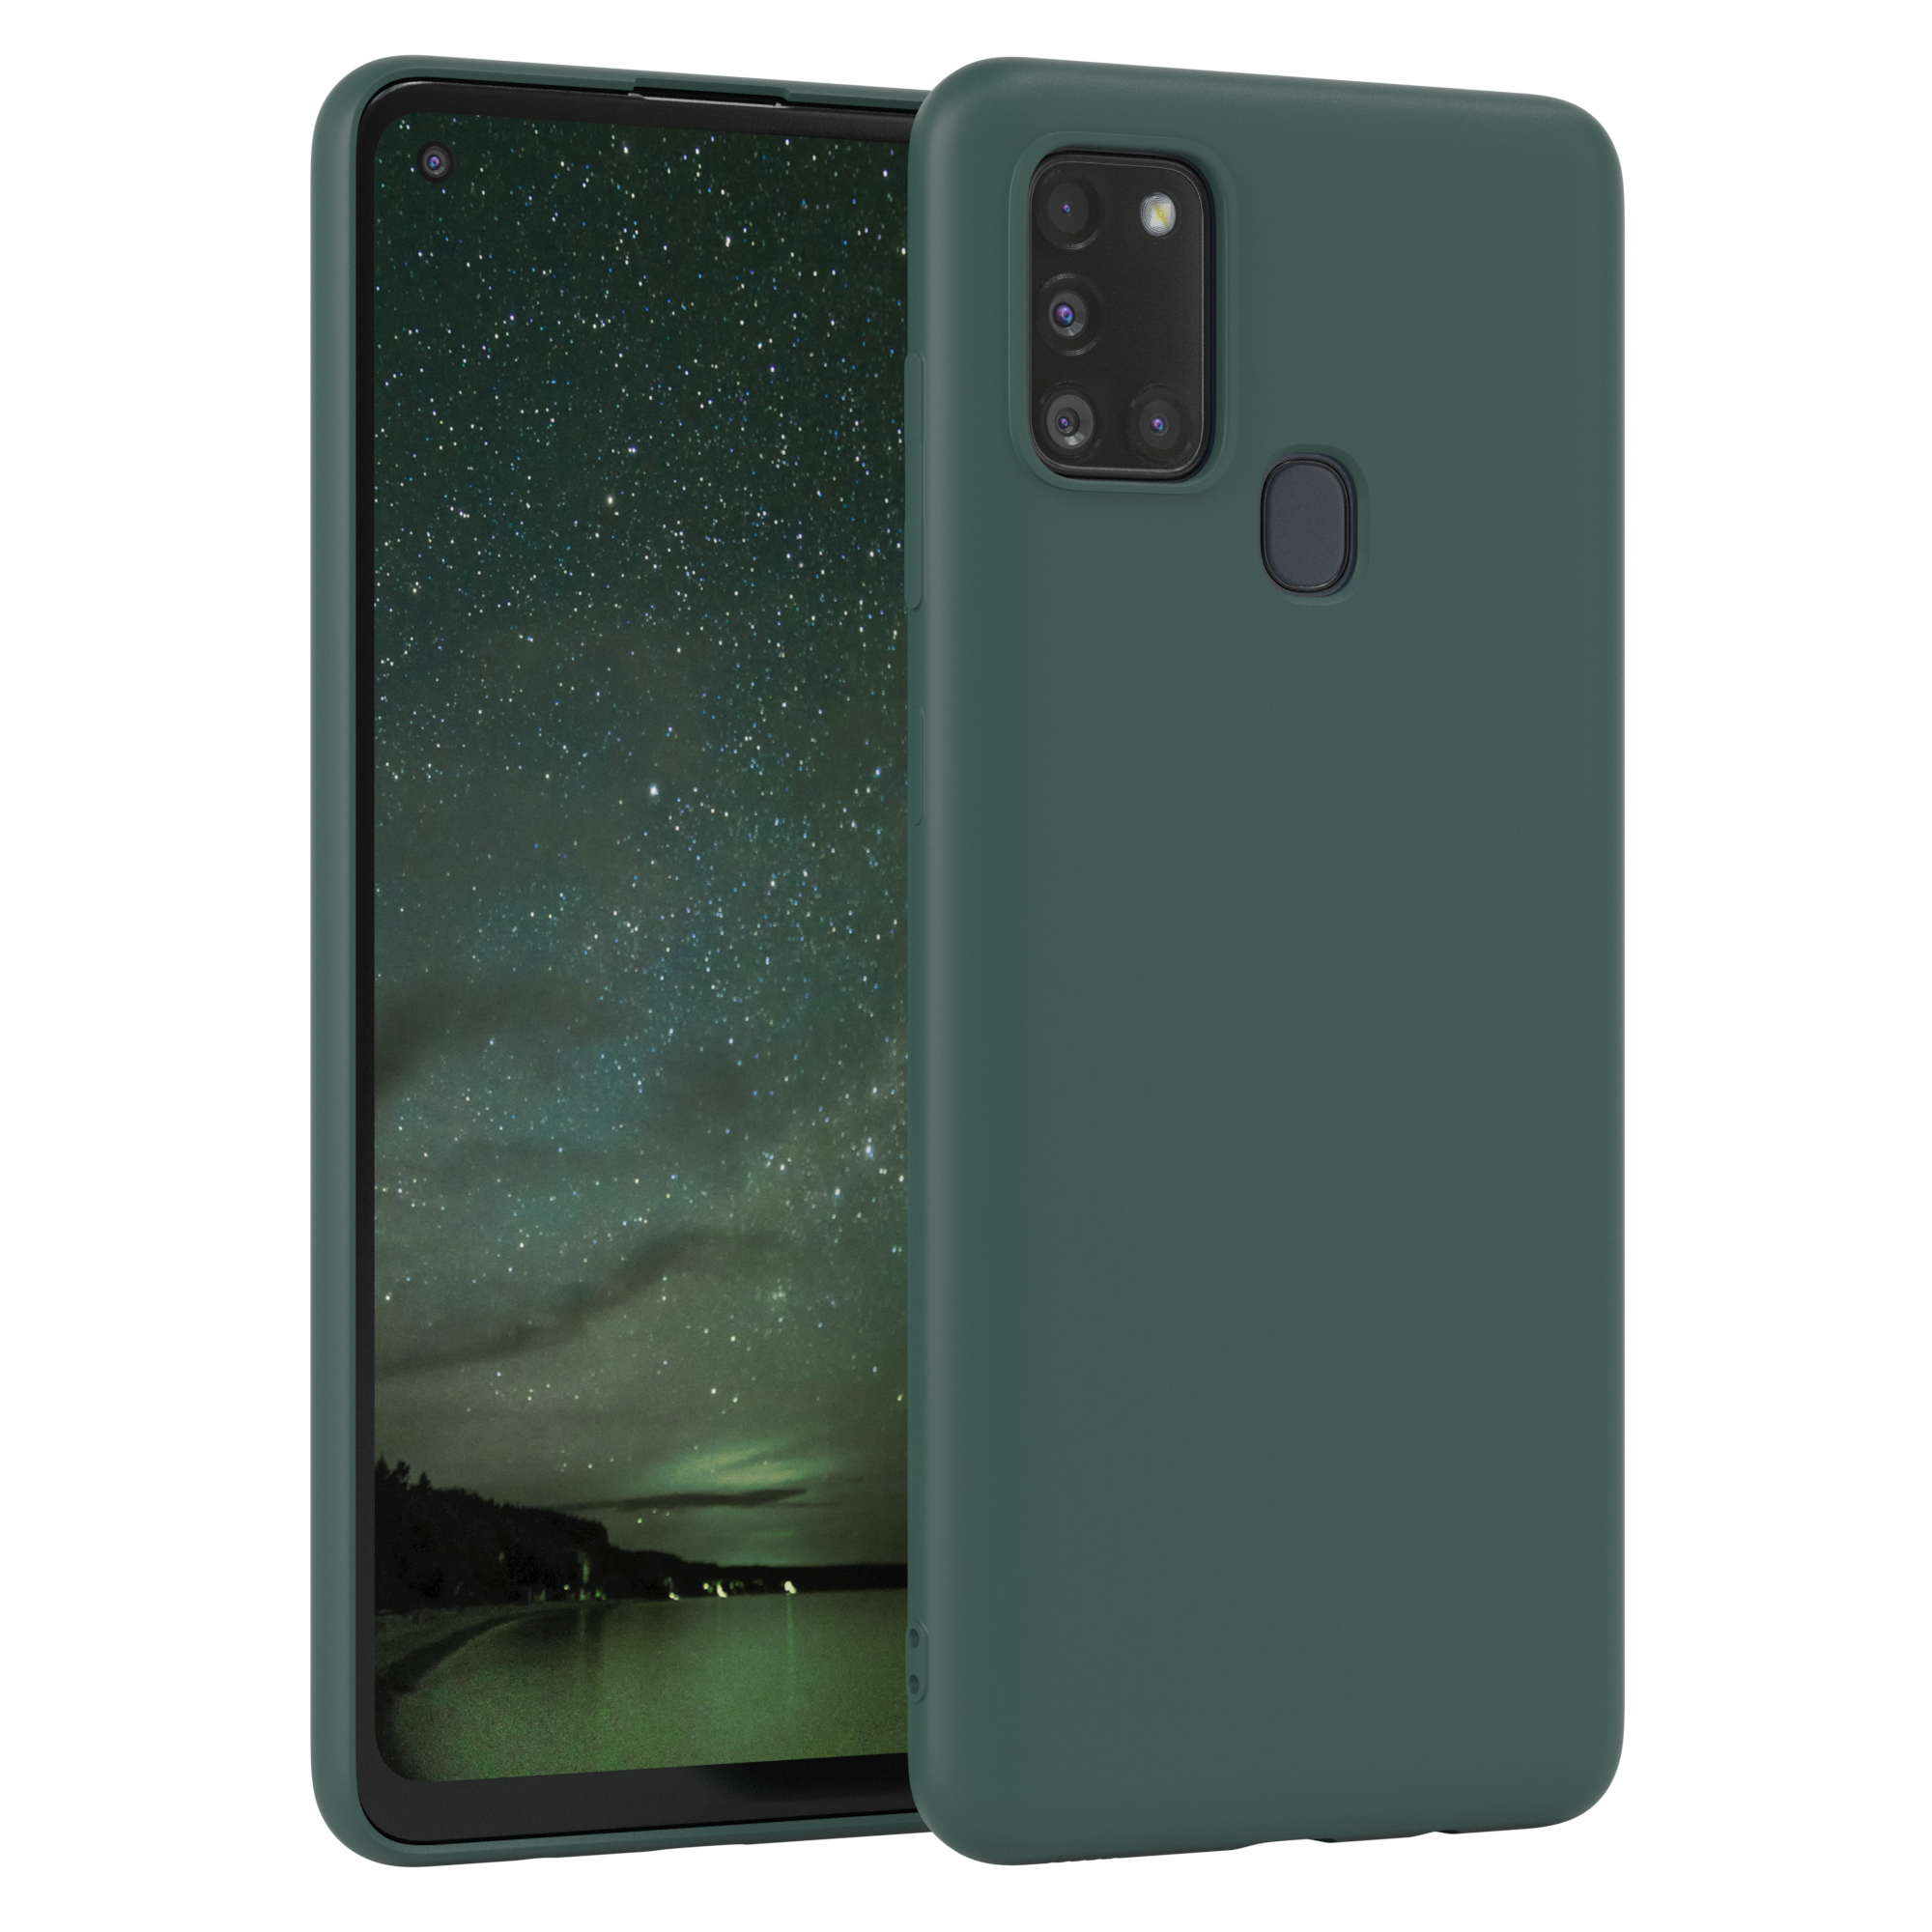 Samsung, CASE Nachtgrün Grün TPU Galaxy / EAZY Handycase Matt, A21s, Backcover, Silikon